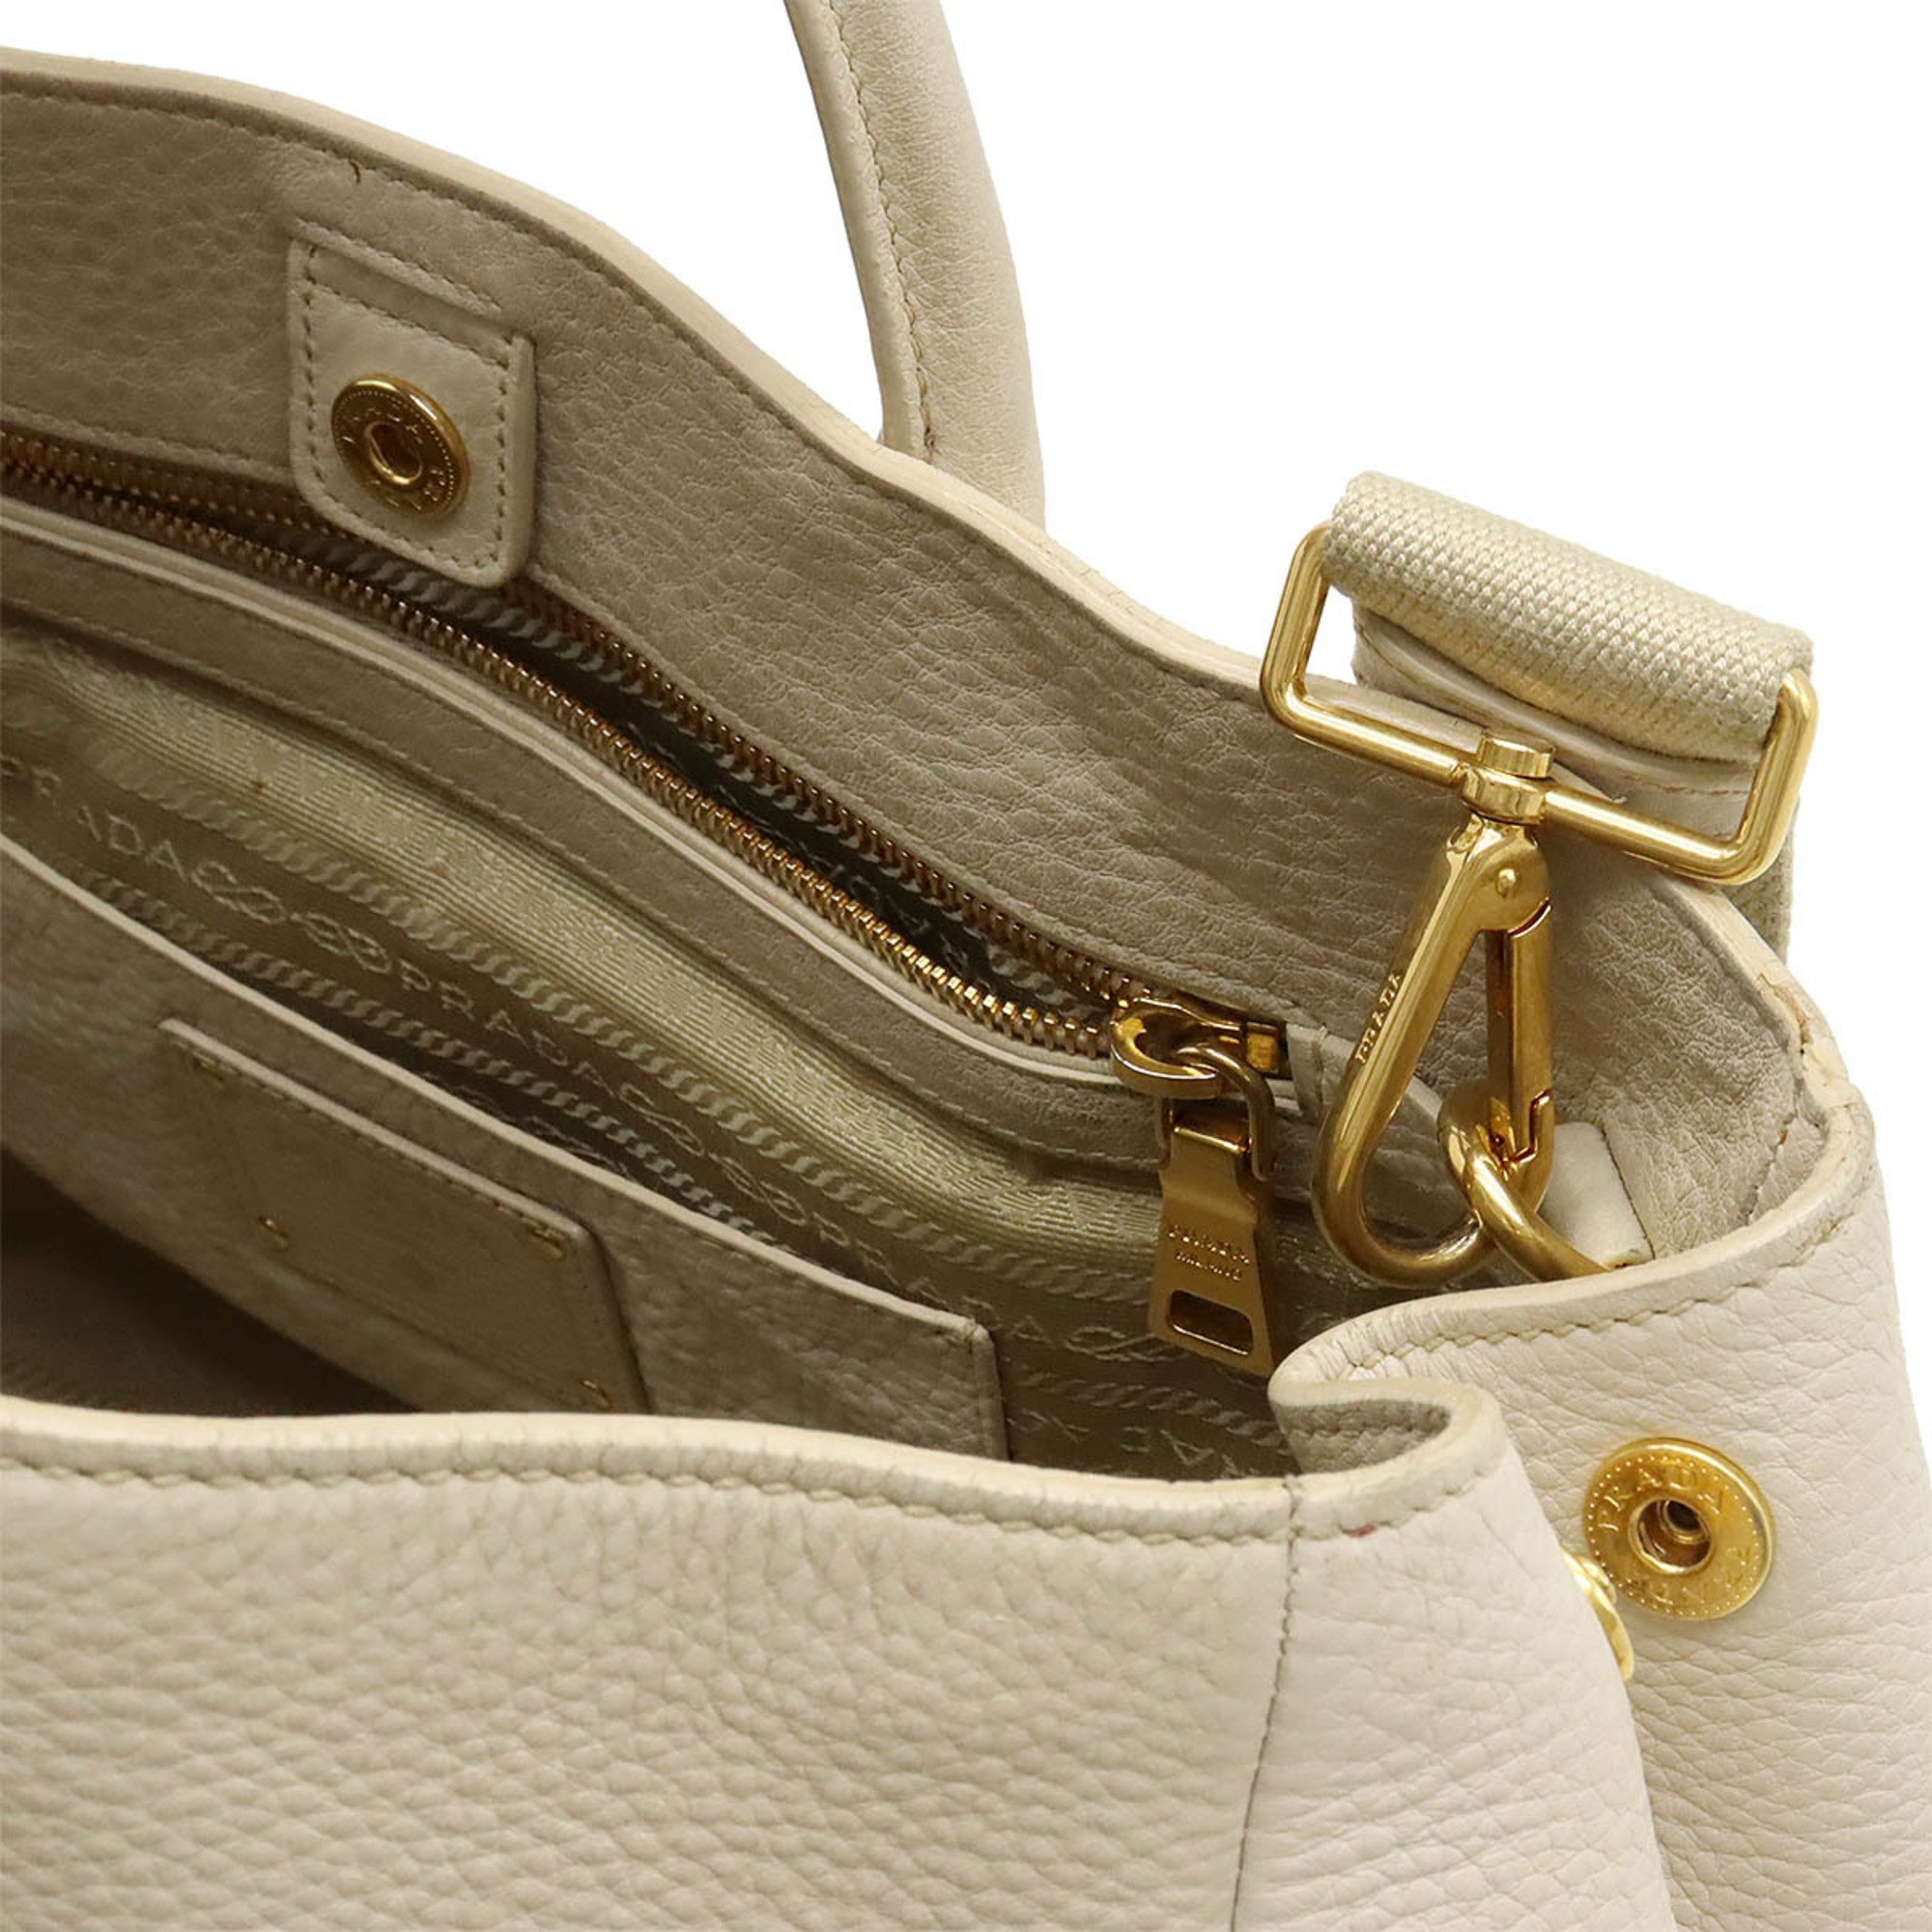 PRADA Prada Tote Bag Large Shoulder Leather Light Beige Purchased at Japan Outlet BN2545